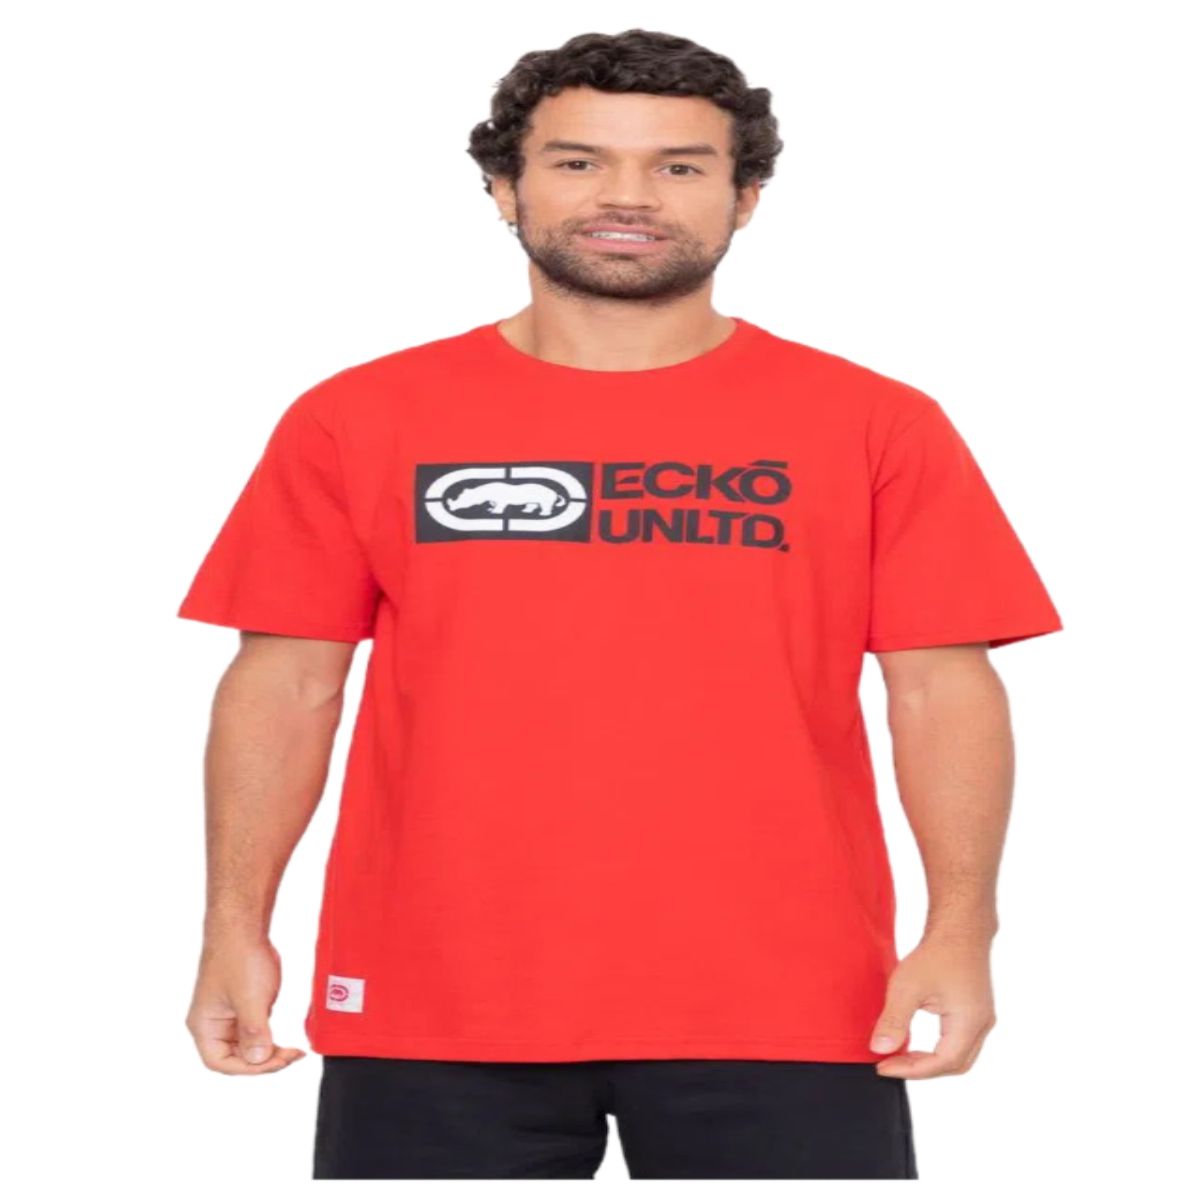 Camiseta Ecko Unltd Masculina Vermelha - Surf Street Camisetas Calças  Blusas Bermudas Bonés Acessorios